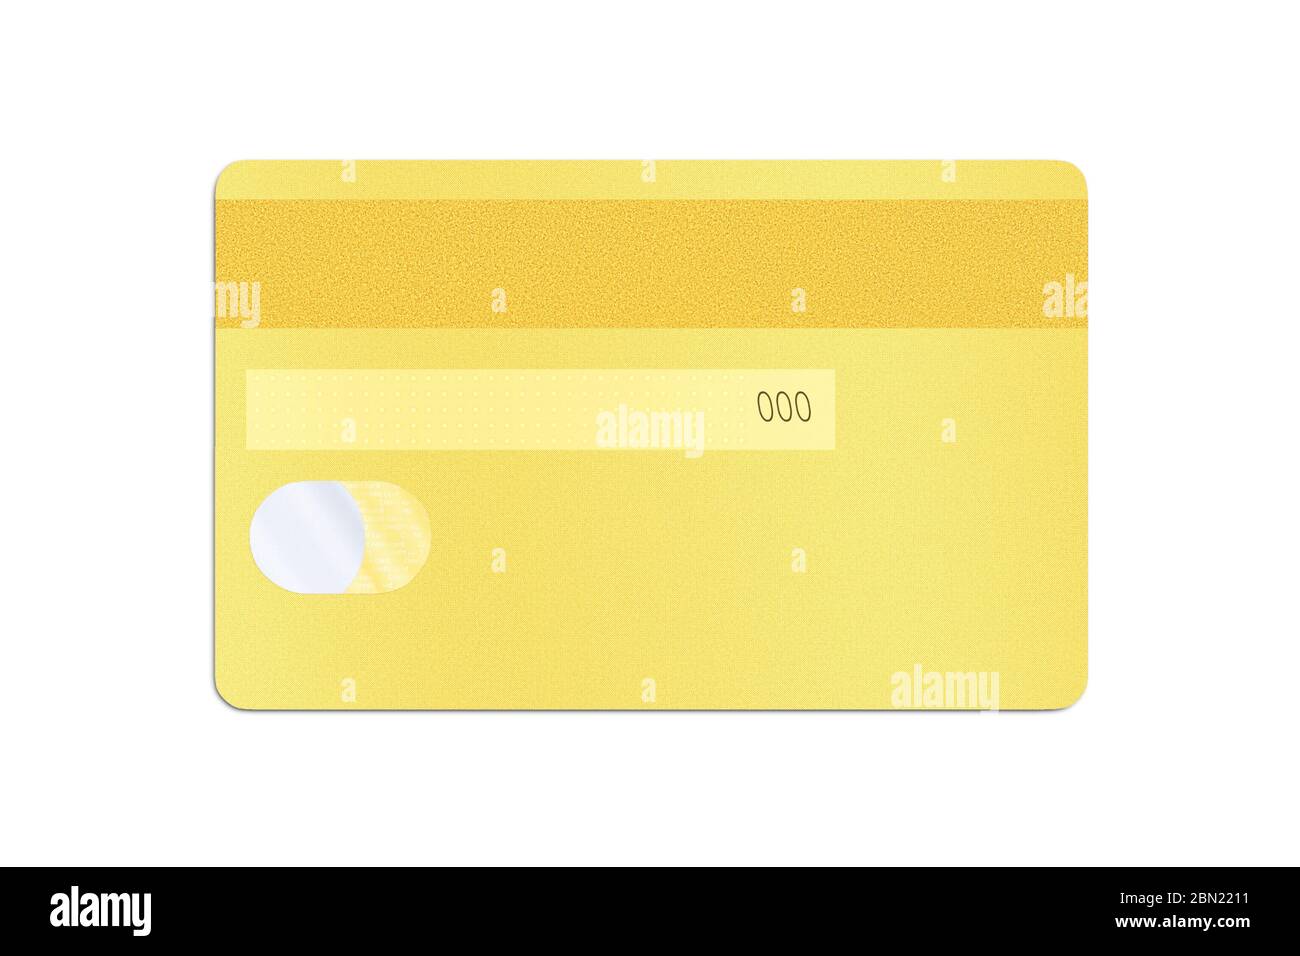 Rückseite einer goldenen Kreditkarte mit einem holografischen